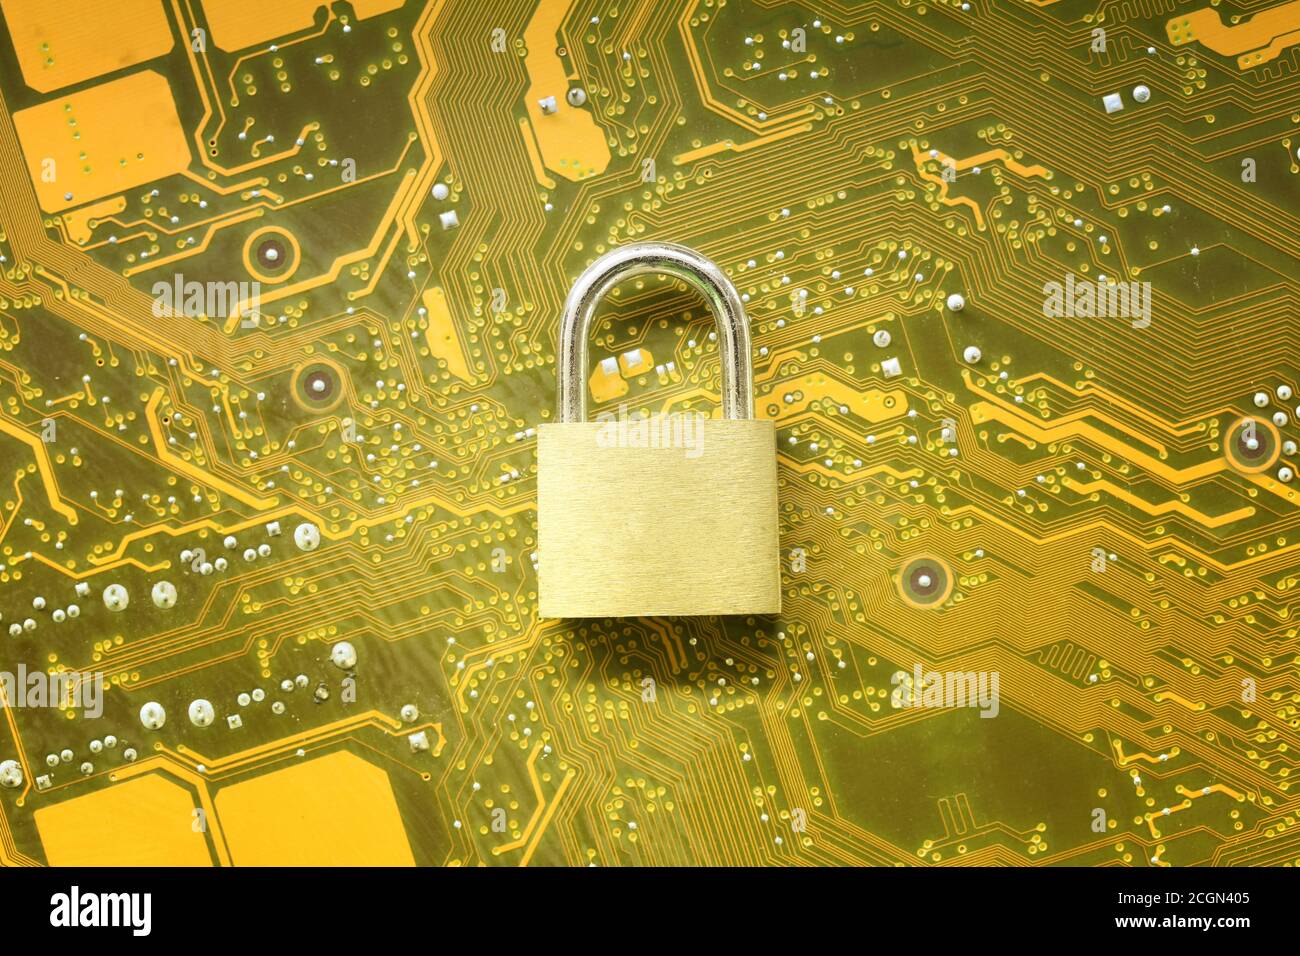 Master-Schlüssel oder Gold Padlock auf elektronischen Motherboards Hintergrund im Konzept der Cyber-Sicherheit. Stockfoto